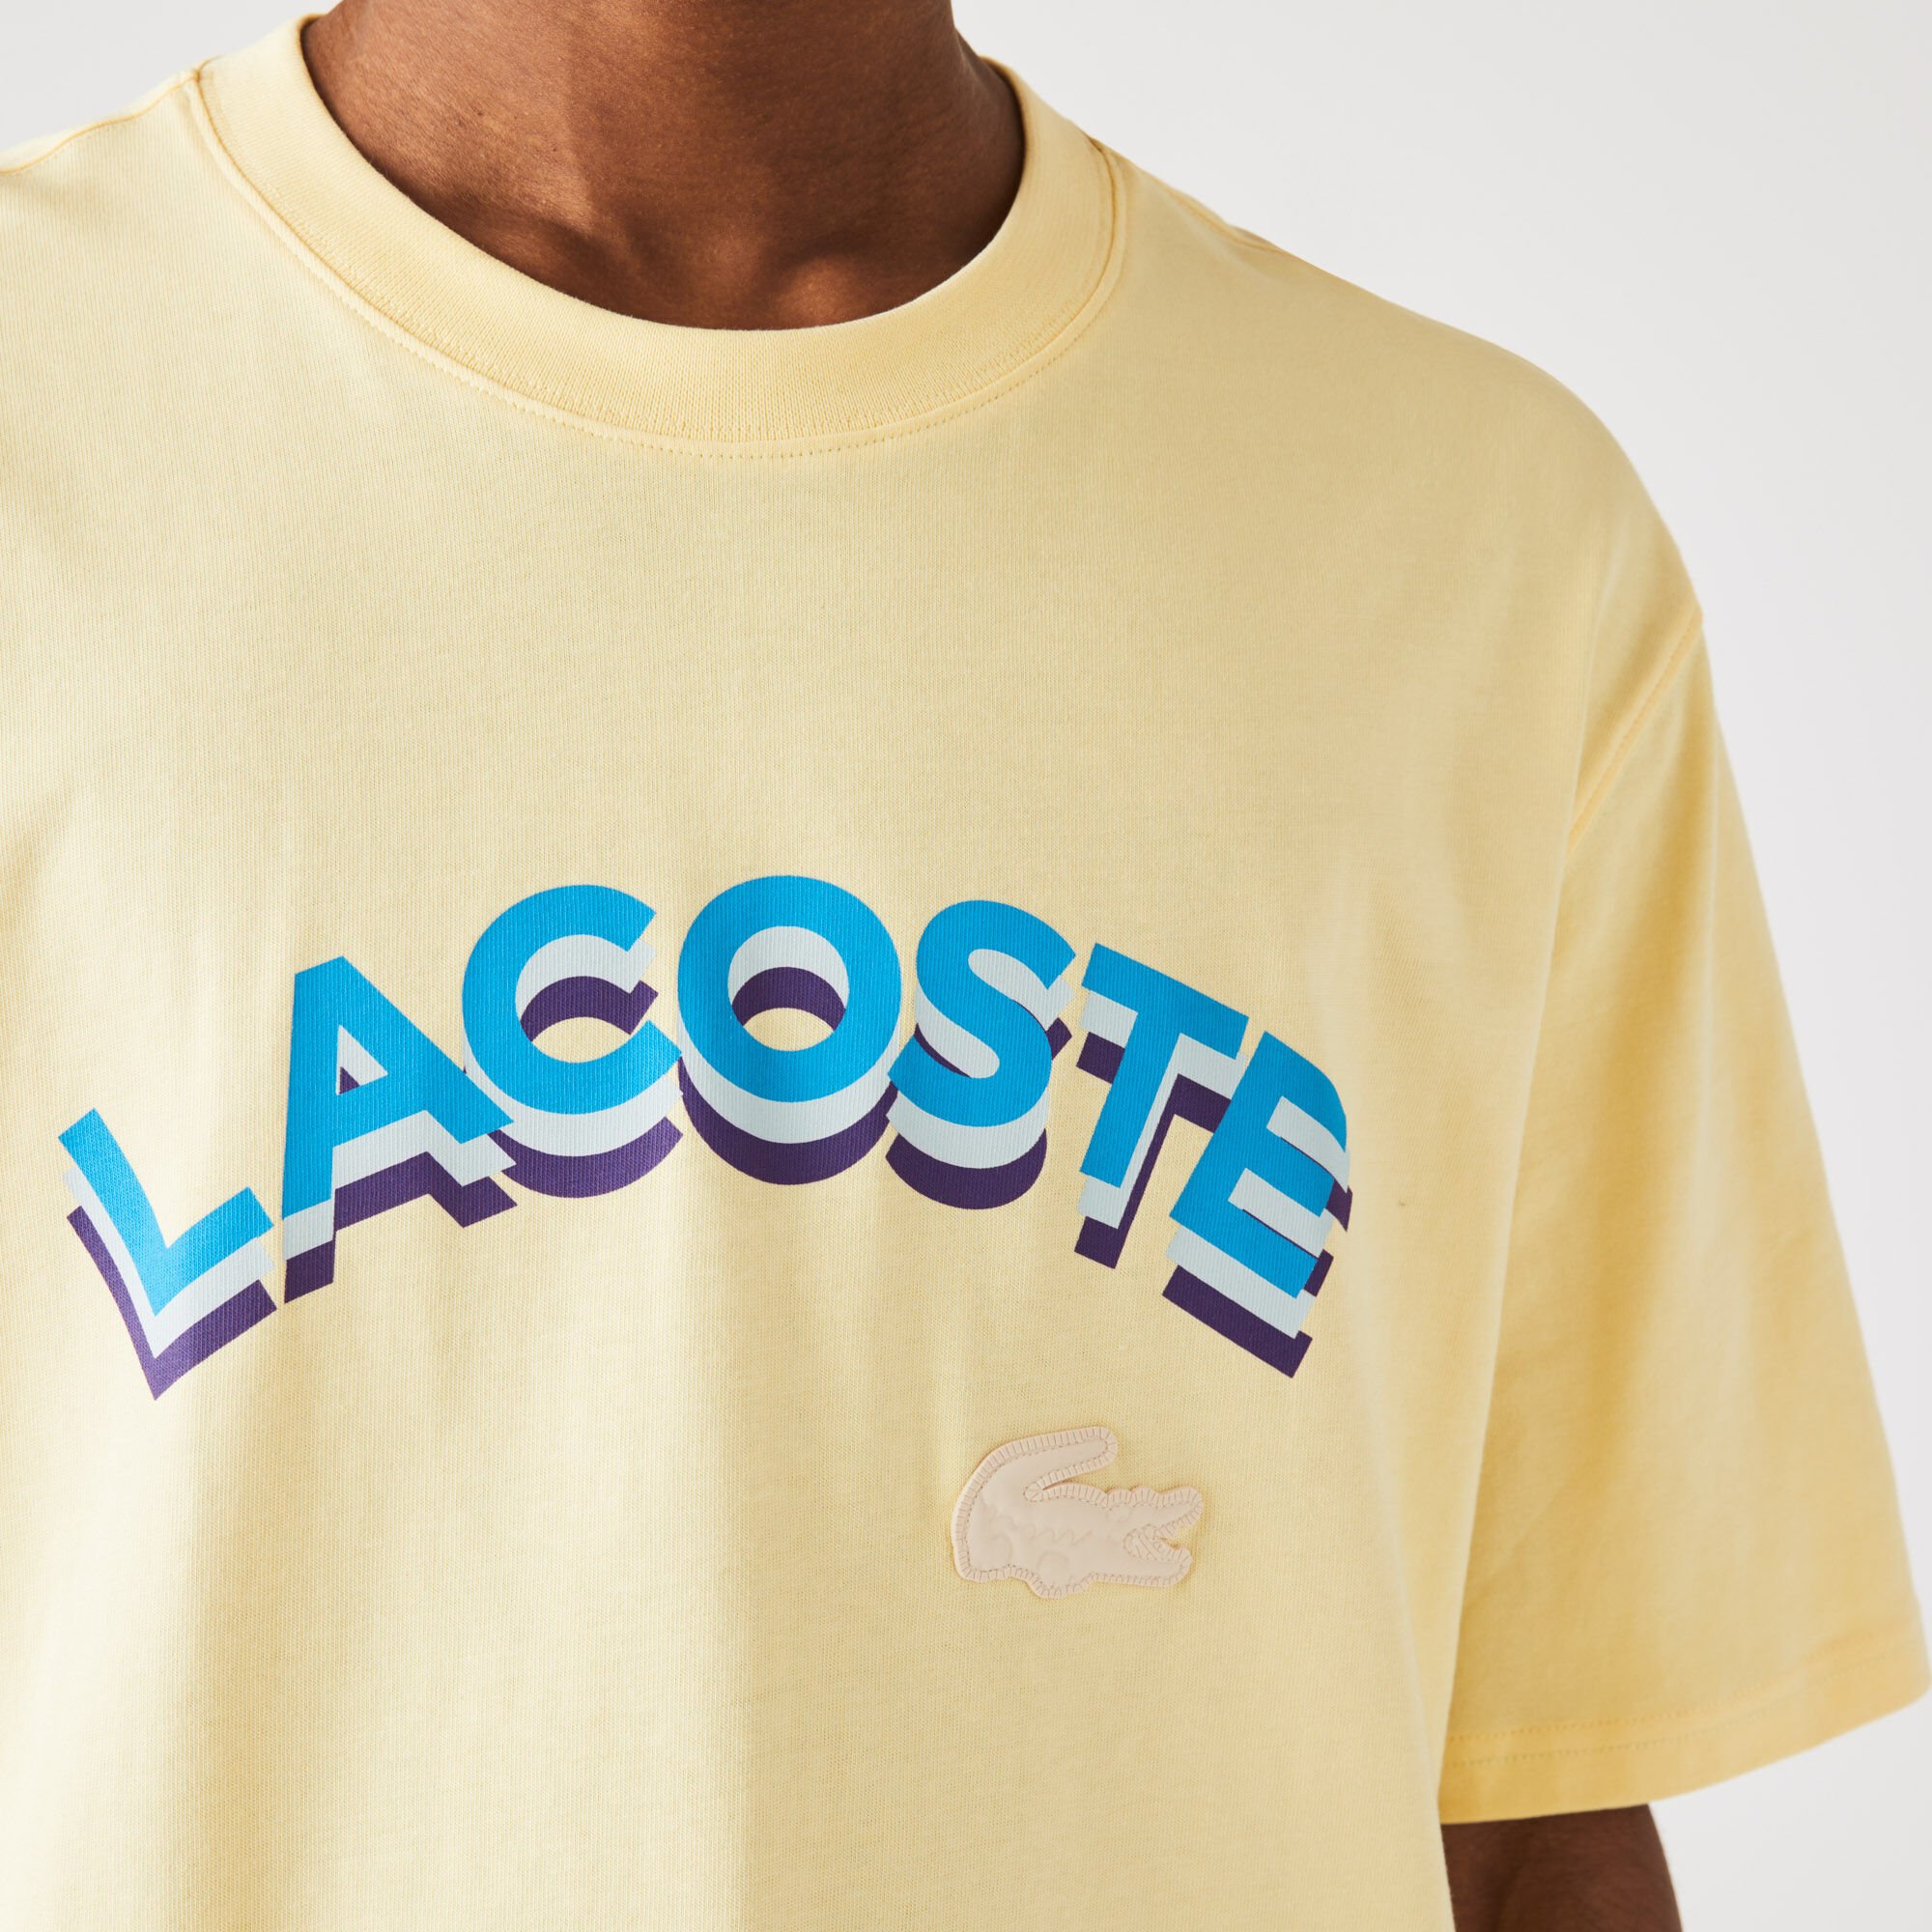 Unisex Lacoste LIVE Loose Fit Lettered Cotton T-shirt